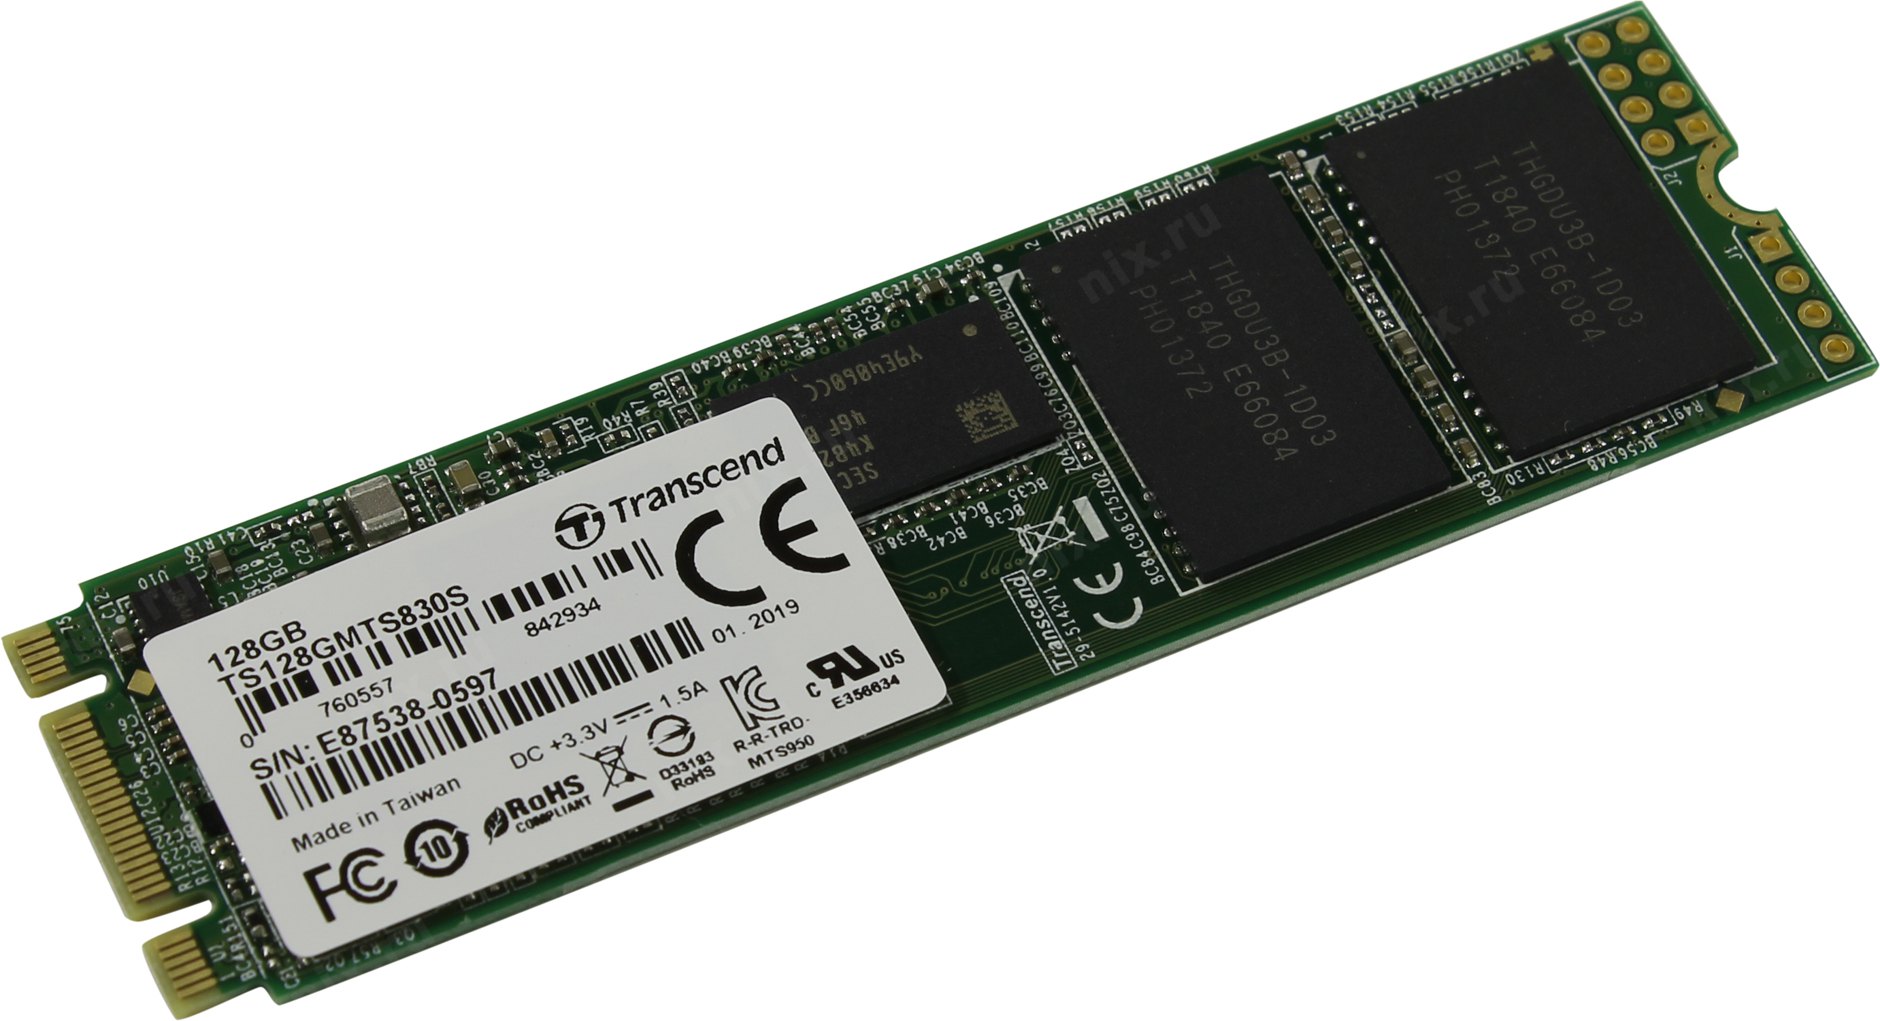 Твердотельный накопитель (SSD) Transcend 128Gb 830S, 2280, M.2 (TS128GMTS830S) б/у, следы монтажа, без упаковки